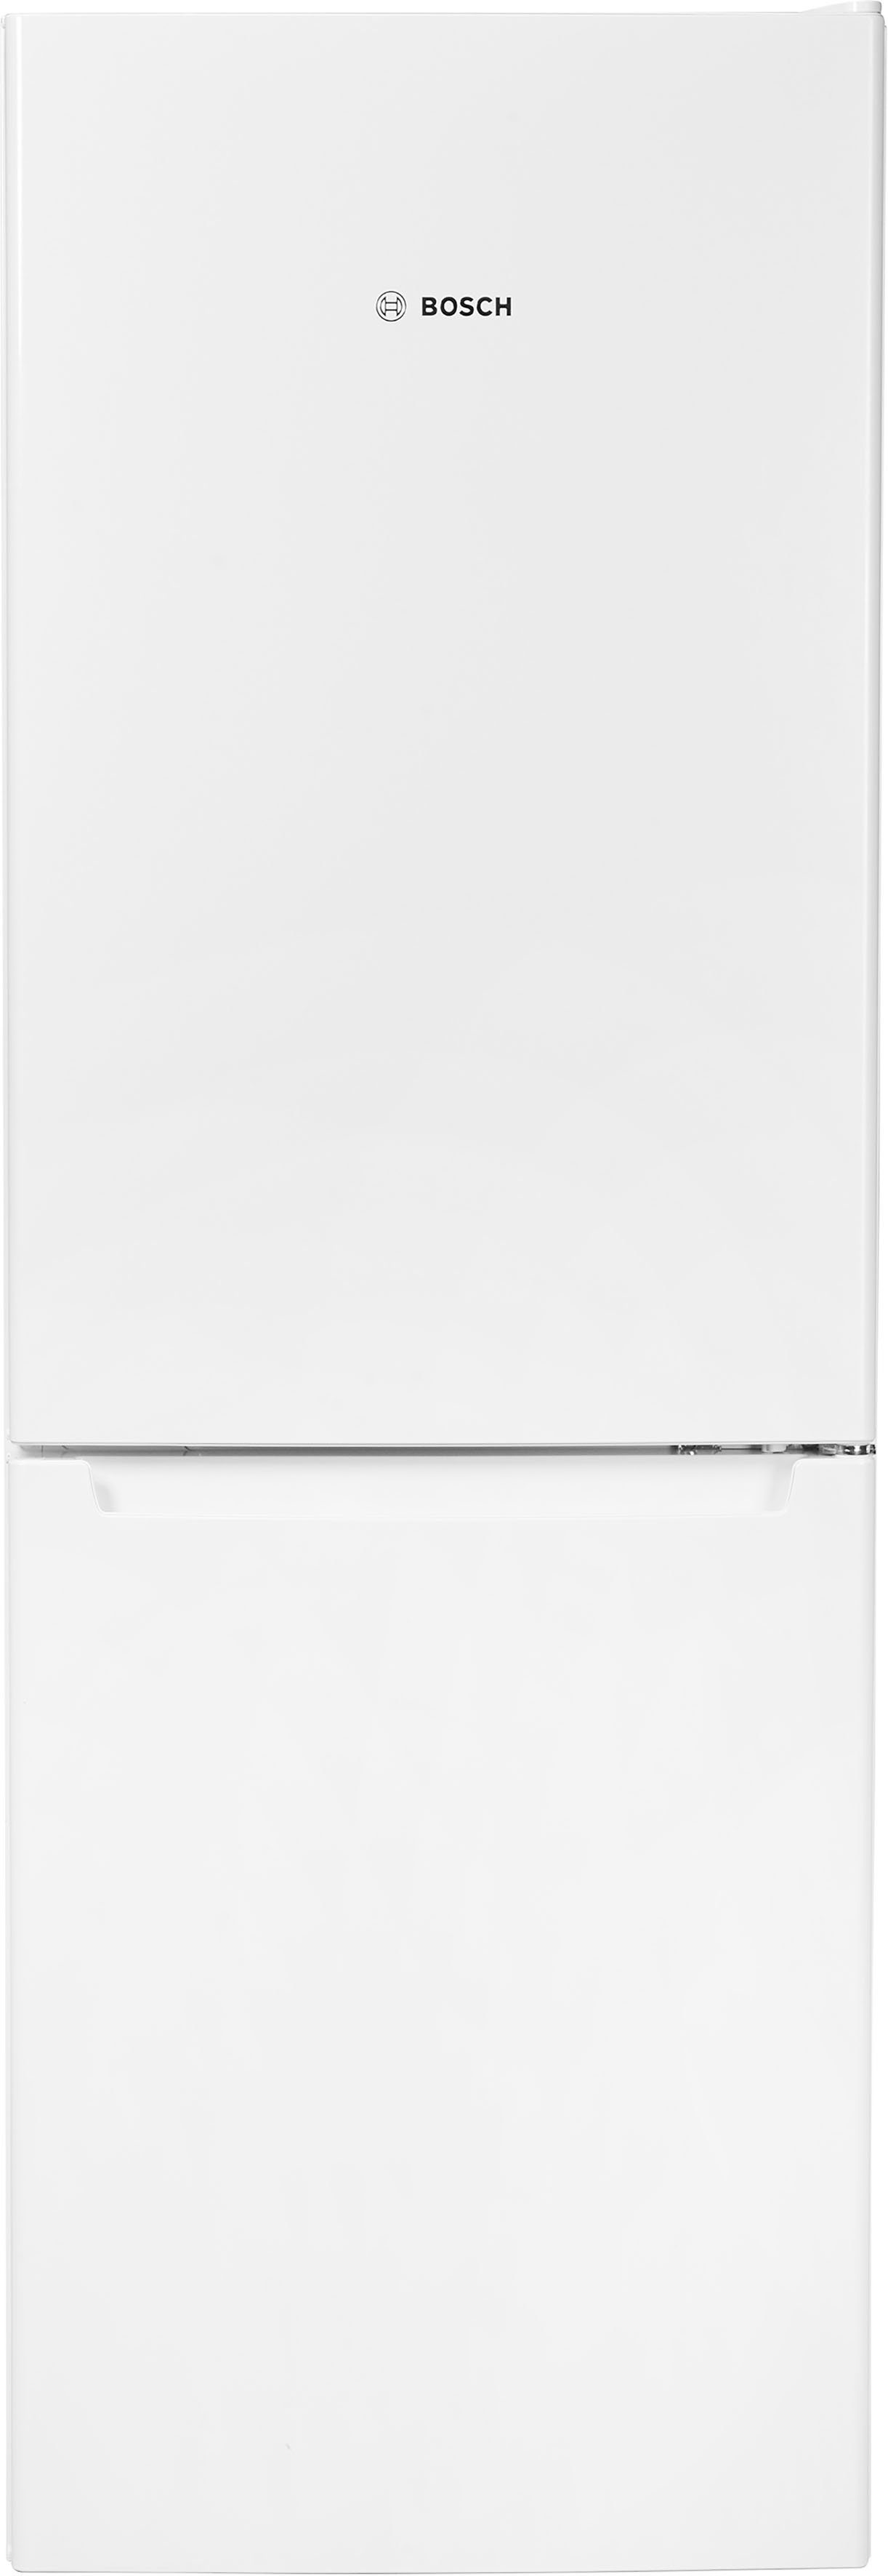 BOSCH Kühl-/Gefrierkombination KGN33NWEB, 176 cm cm breit hoch, weiß 60